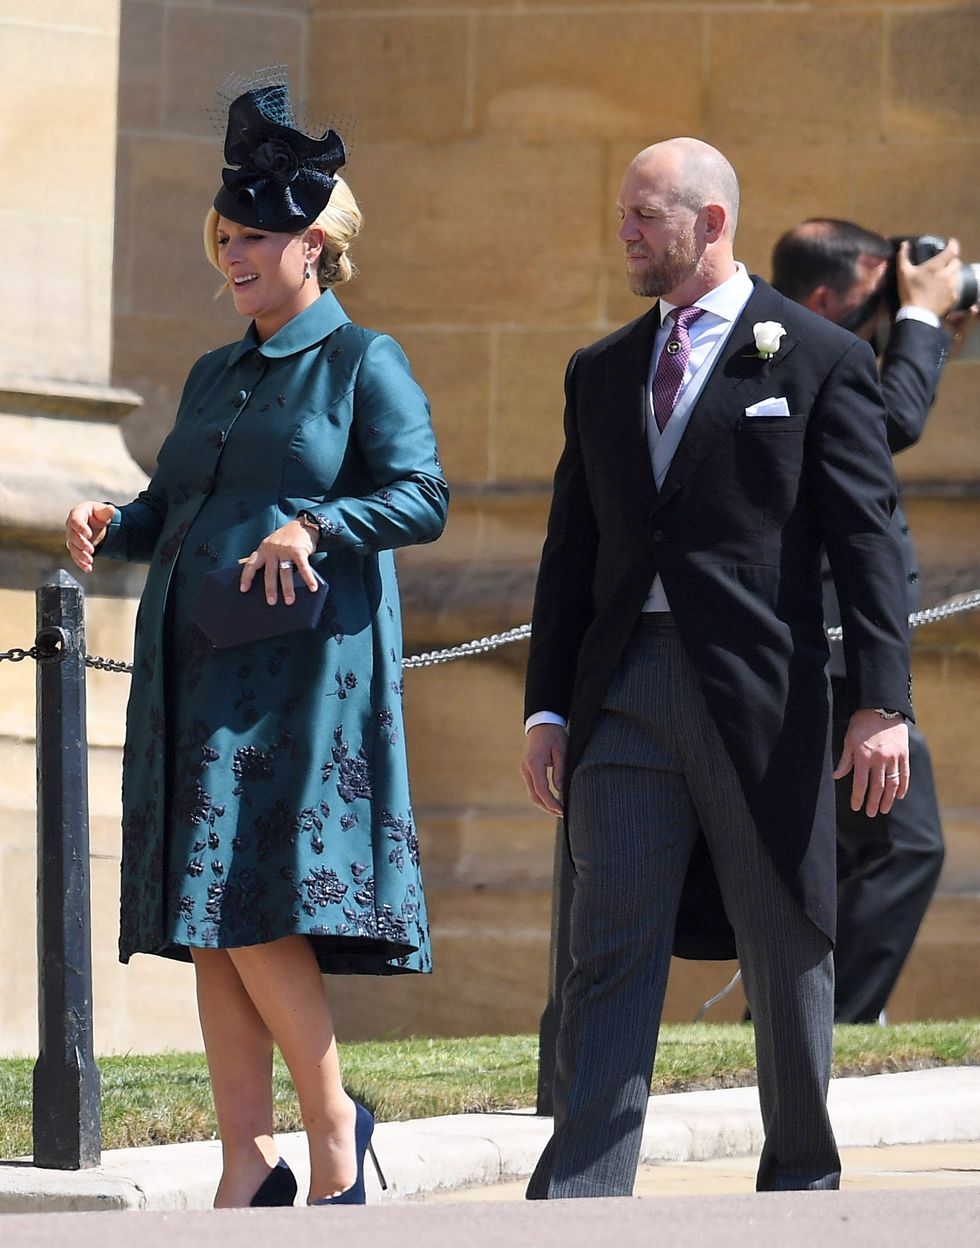 Royal Wedding A-List Guests Fashion